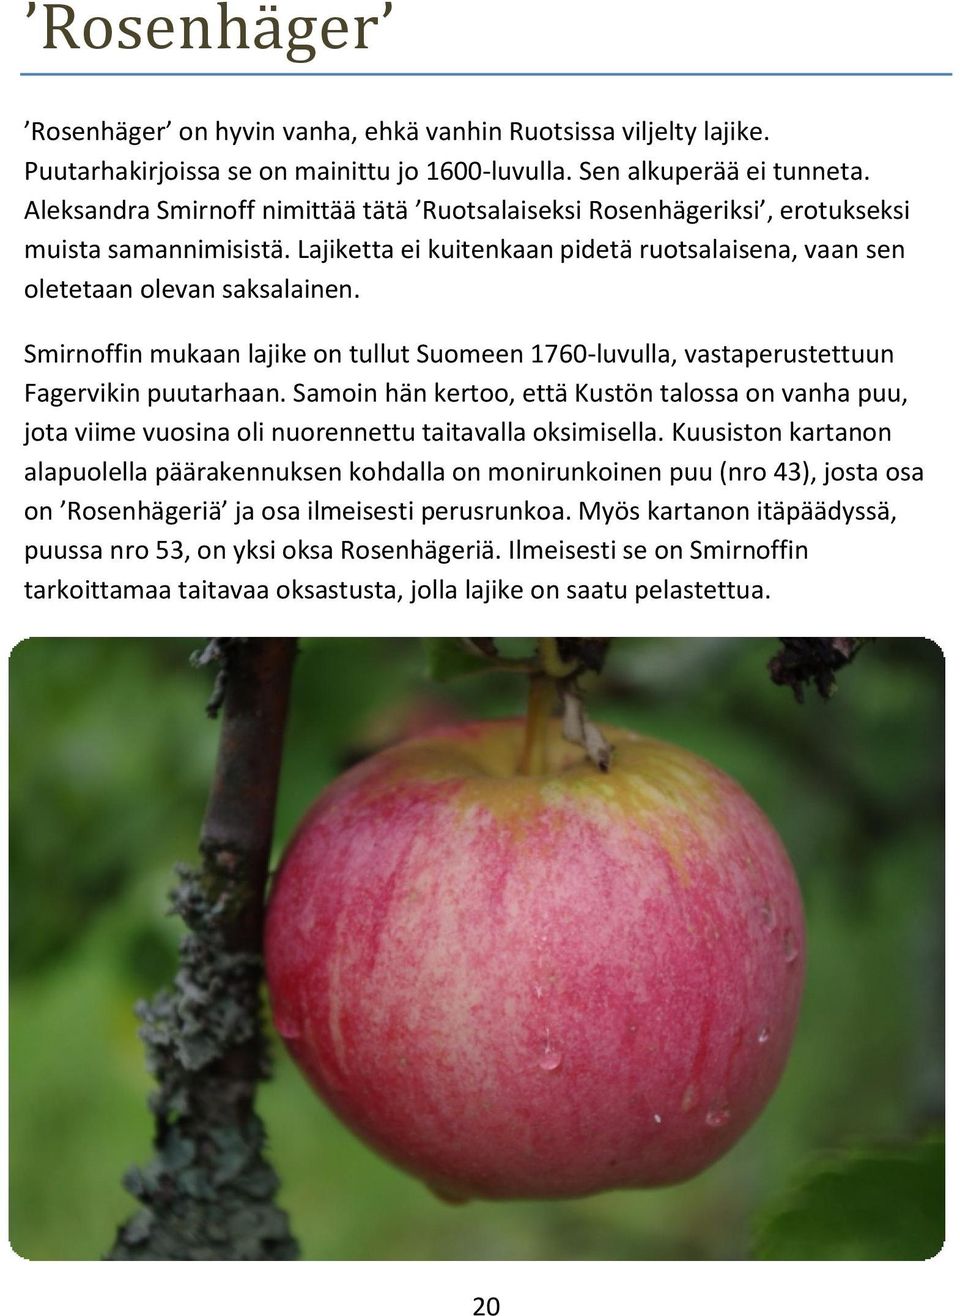 Smirnoffin mukaan lajike on tullut Suomeen 1760-luvulla, vastaperustettuun Fagervikin puutarhaan.